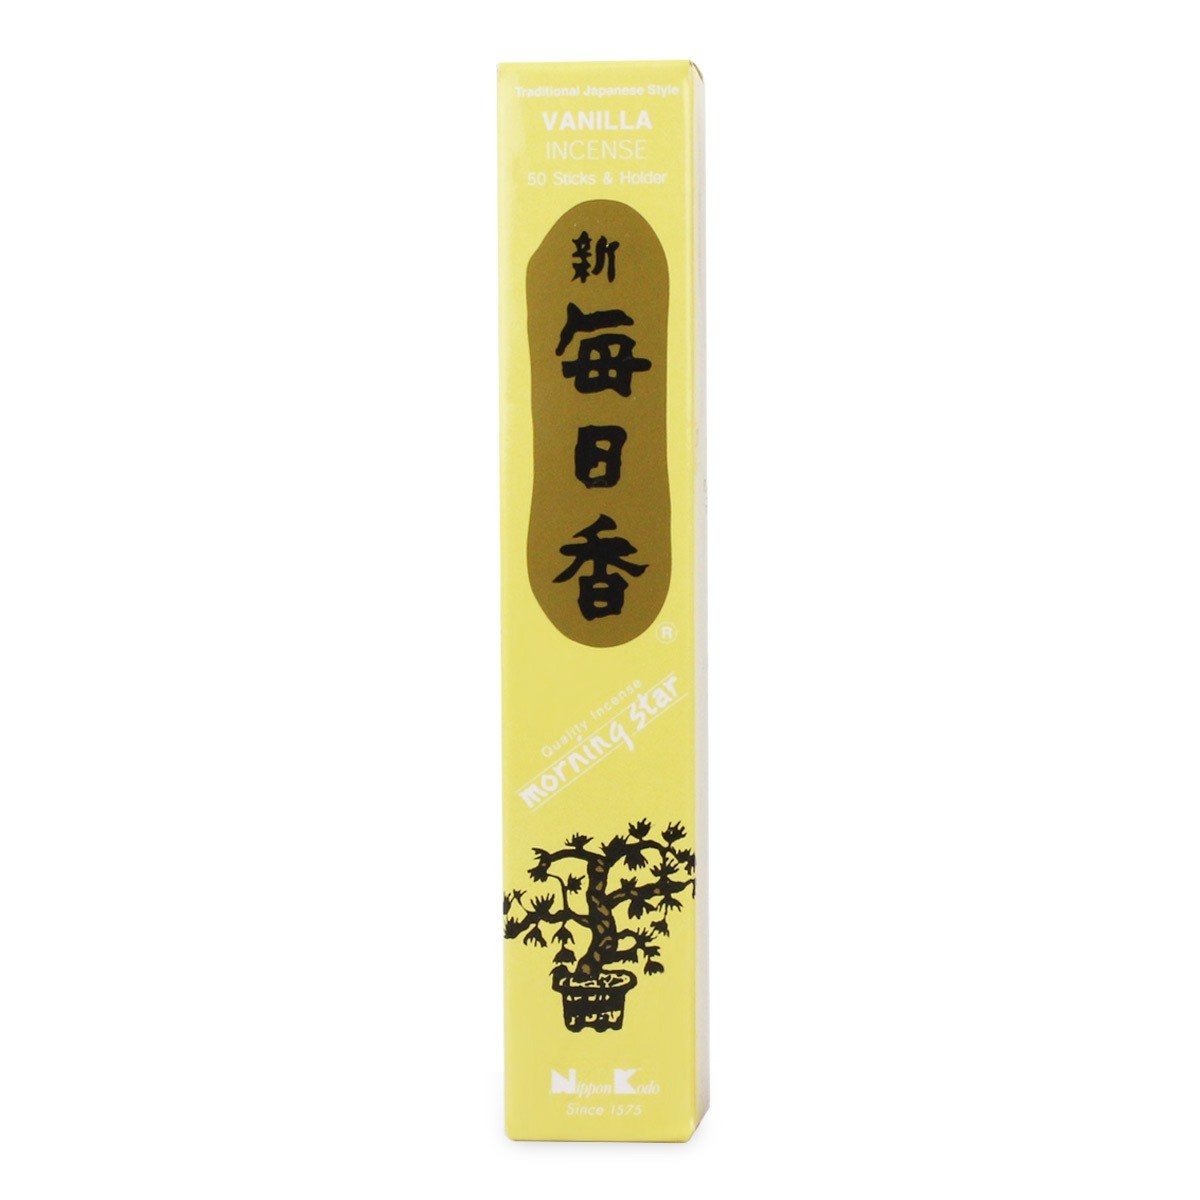 Nippon Kodo - Morning Star - Vanilla - 50 Incense Sticks & Holder